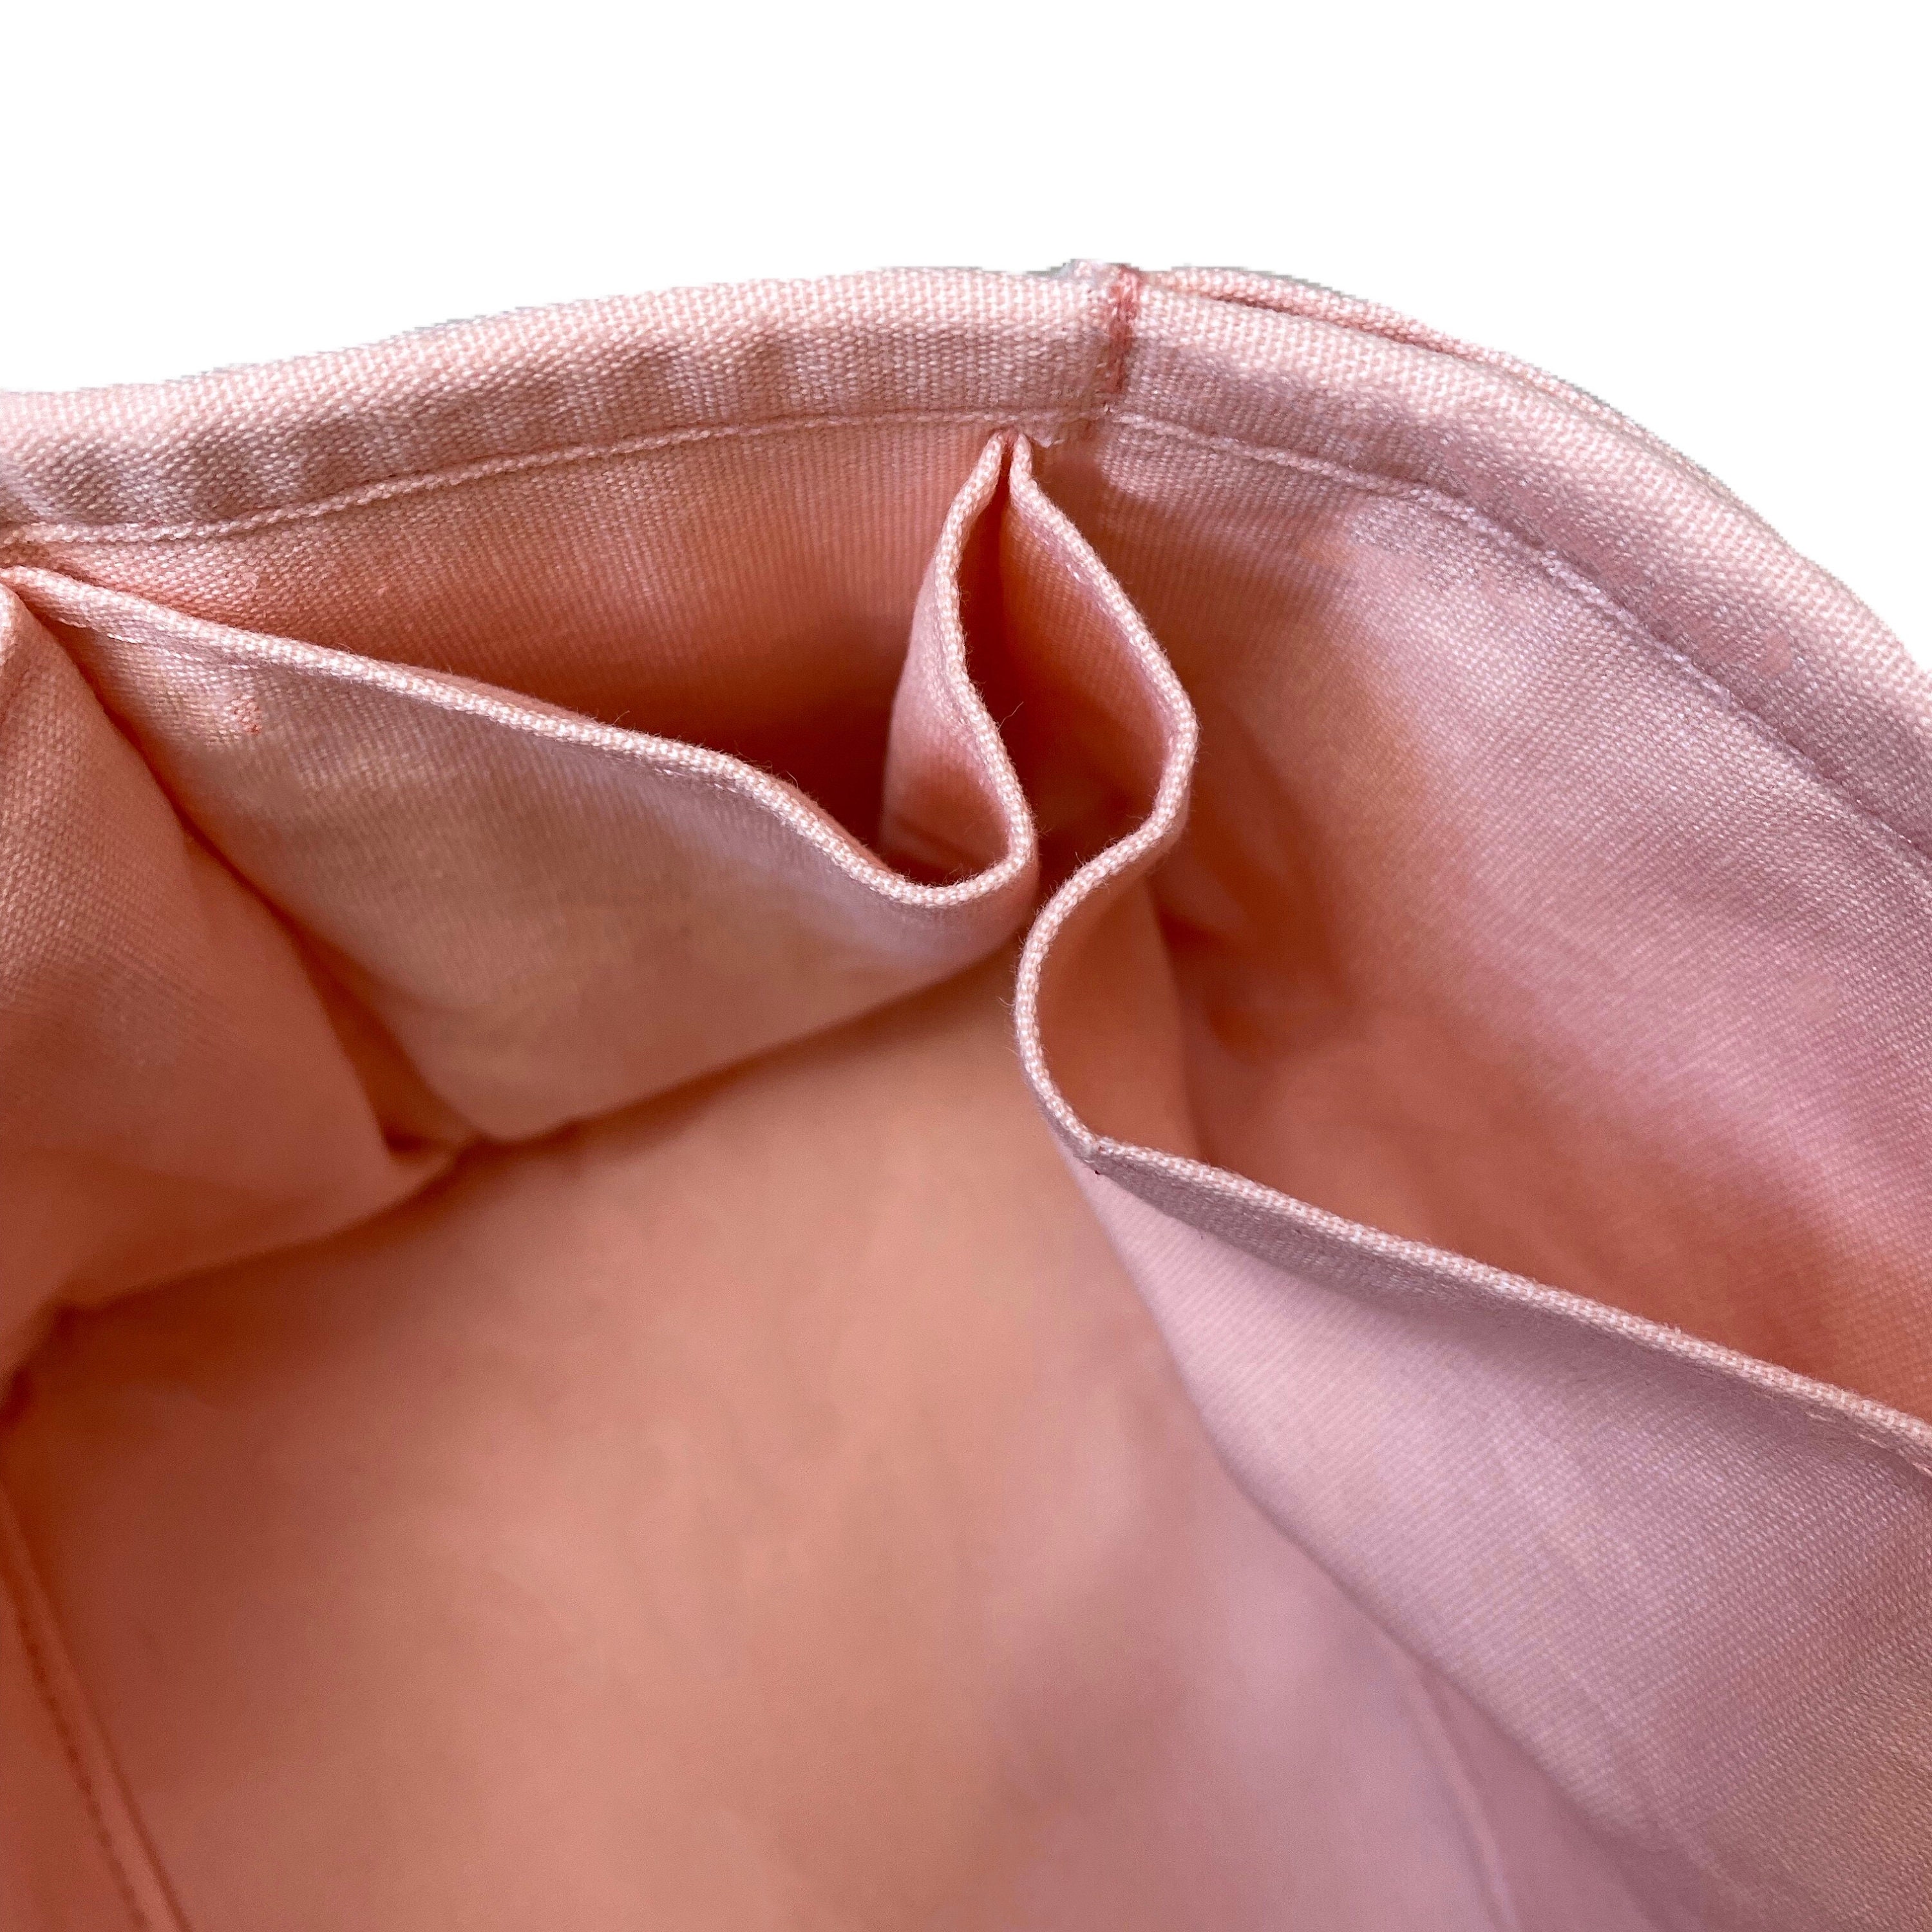 NEW Premium Canvas Melie Bag Organizer oval Shape / Melie 